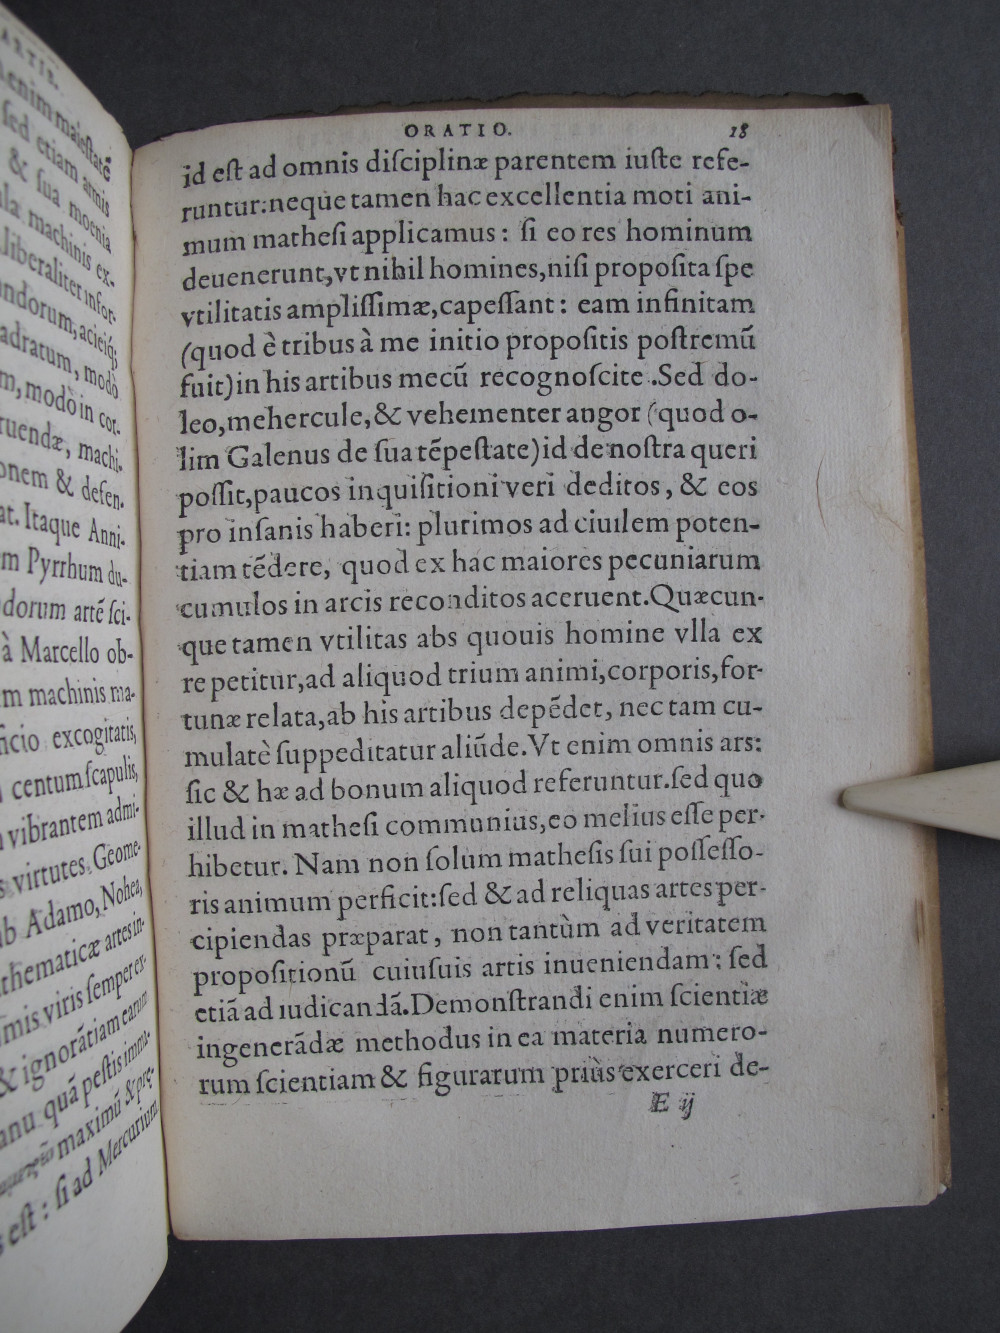 Folio 18 recto